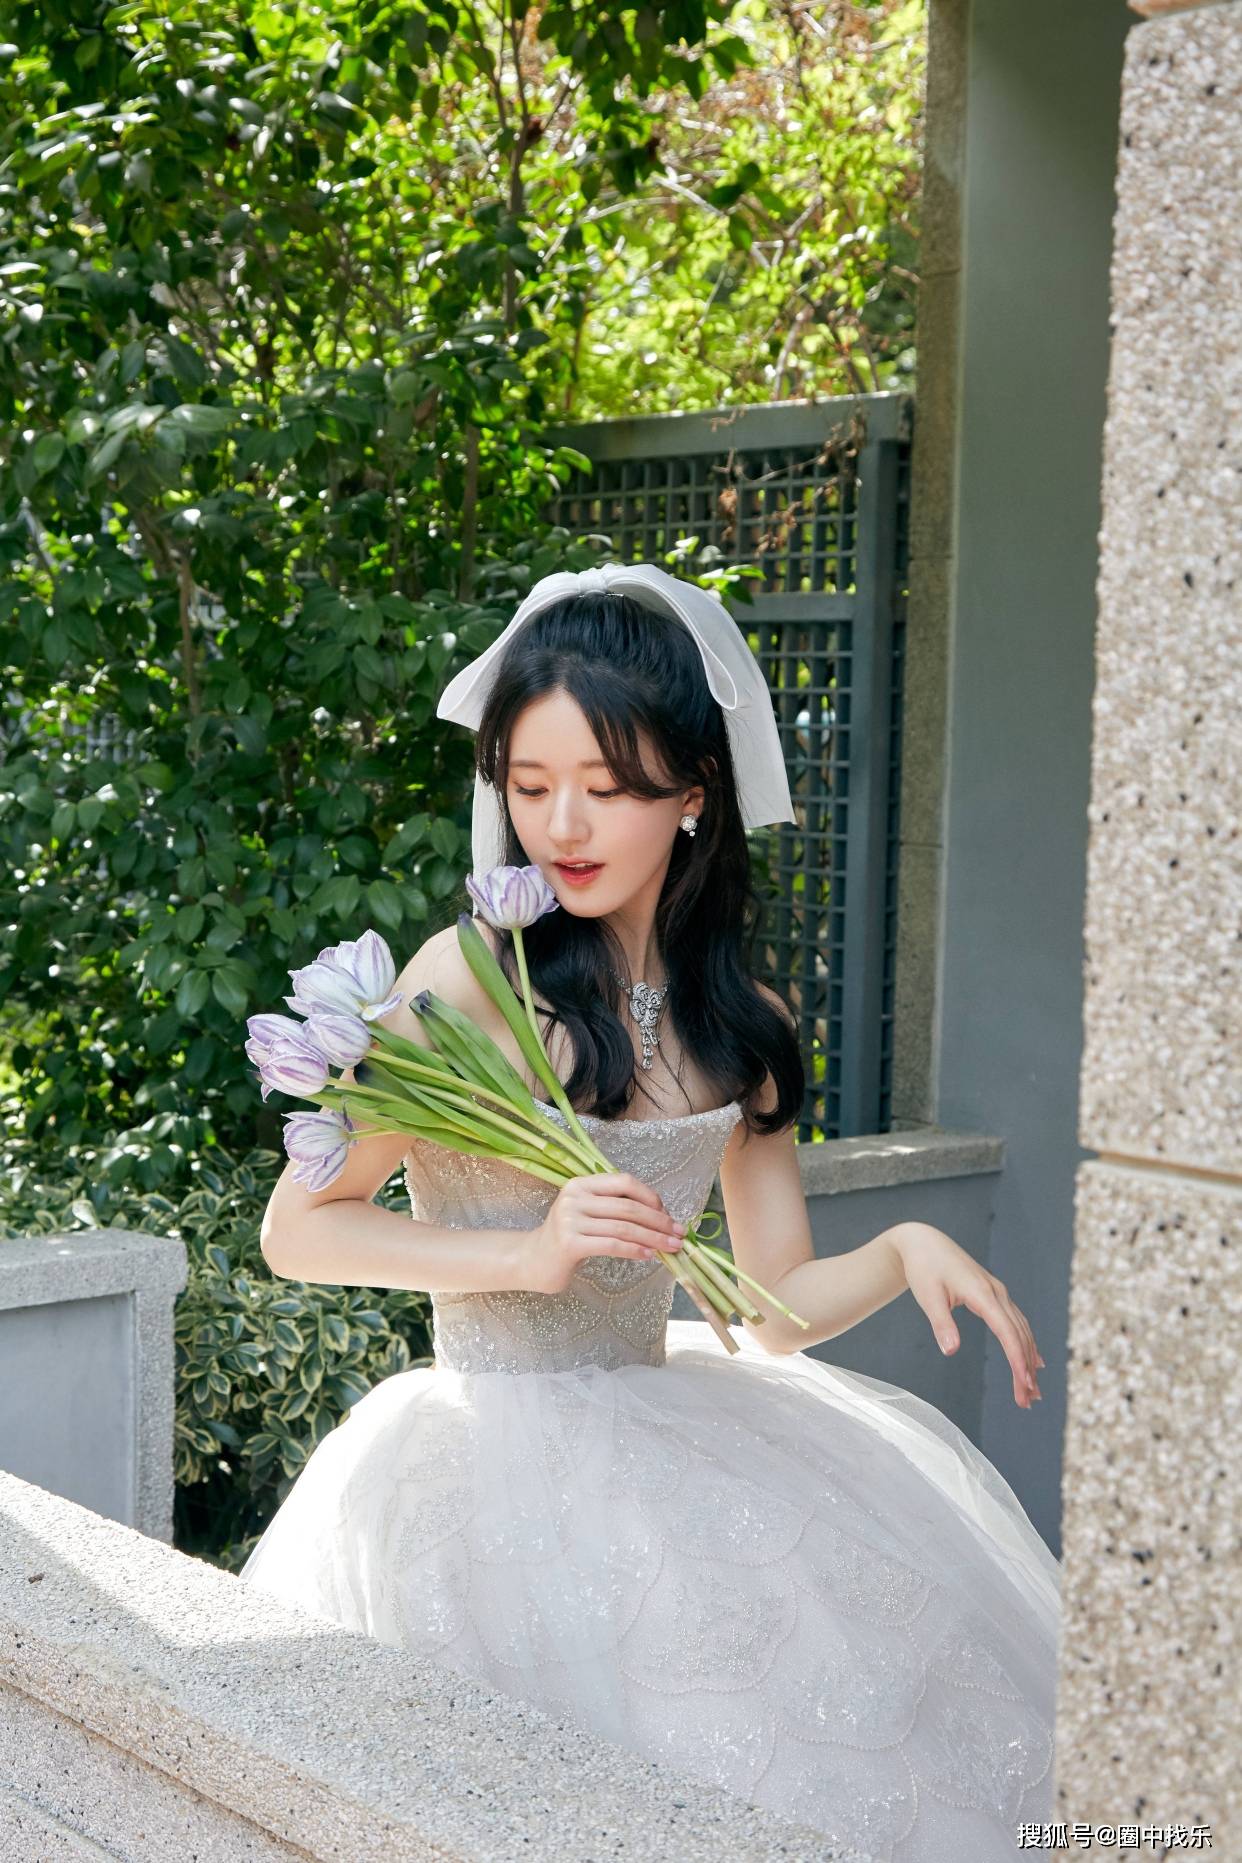 赵露思生图与精修无差别,穿白色纱裙又甜又美,实力演绎在逃公主